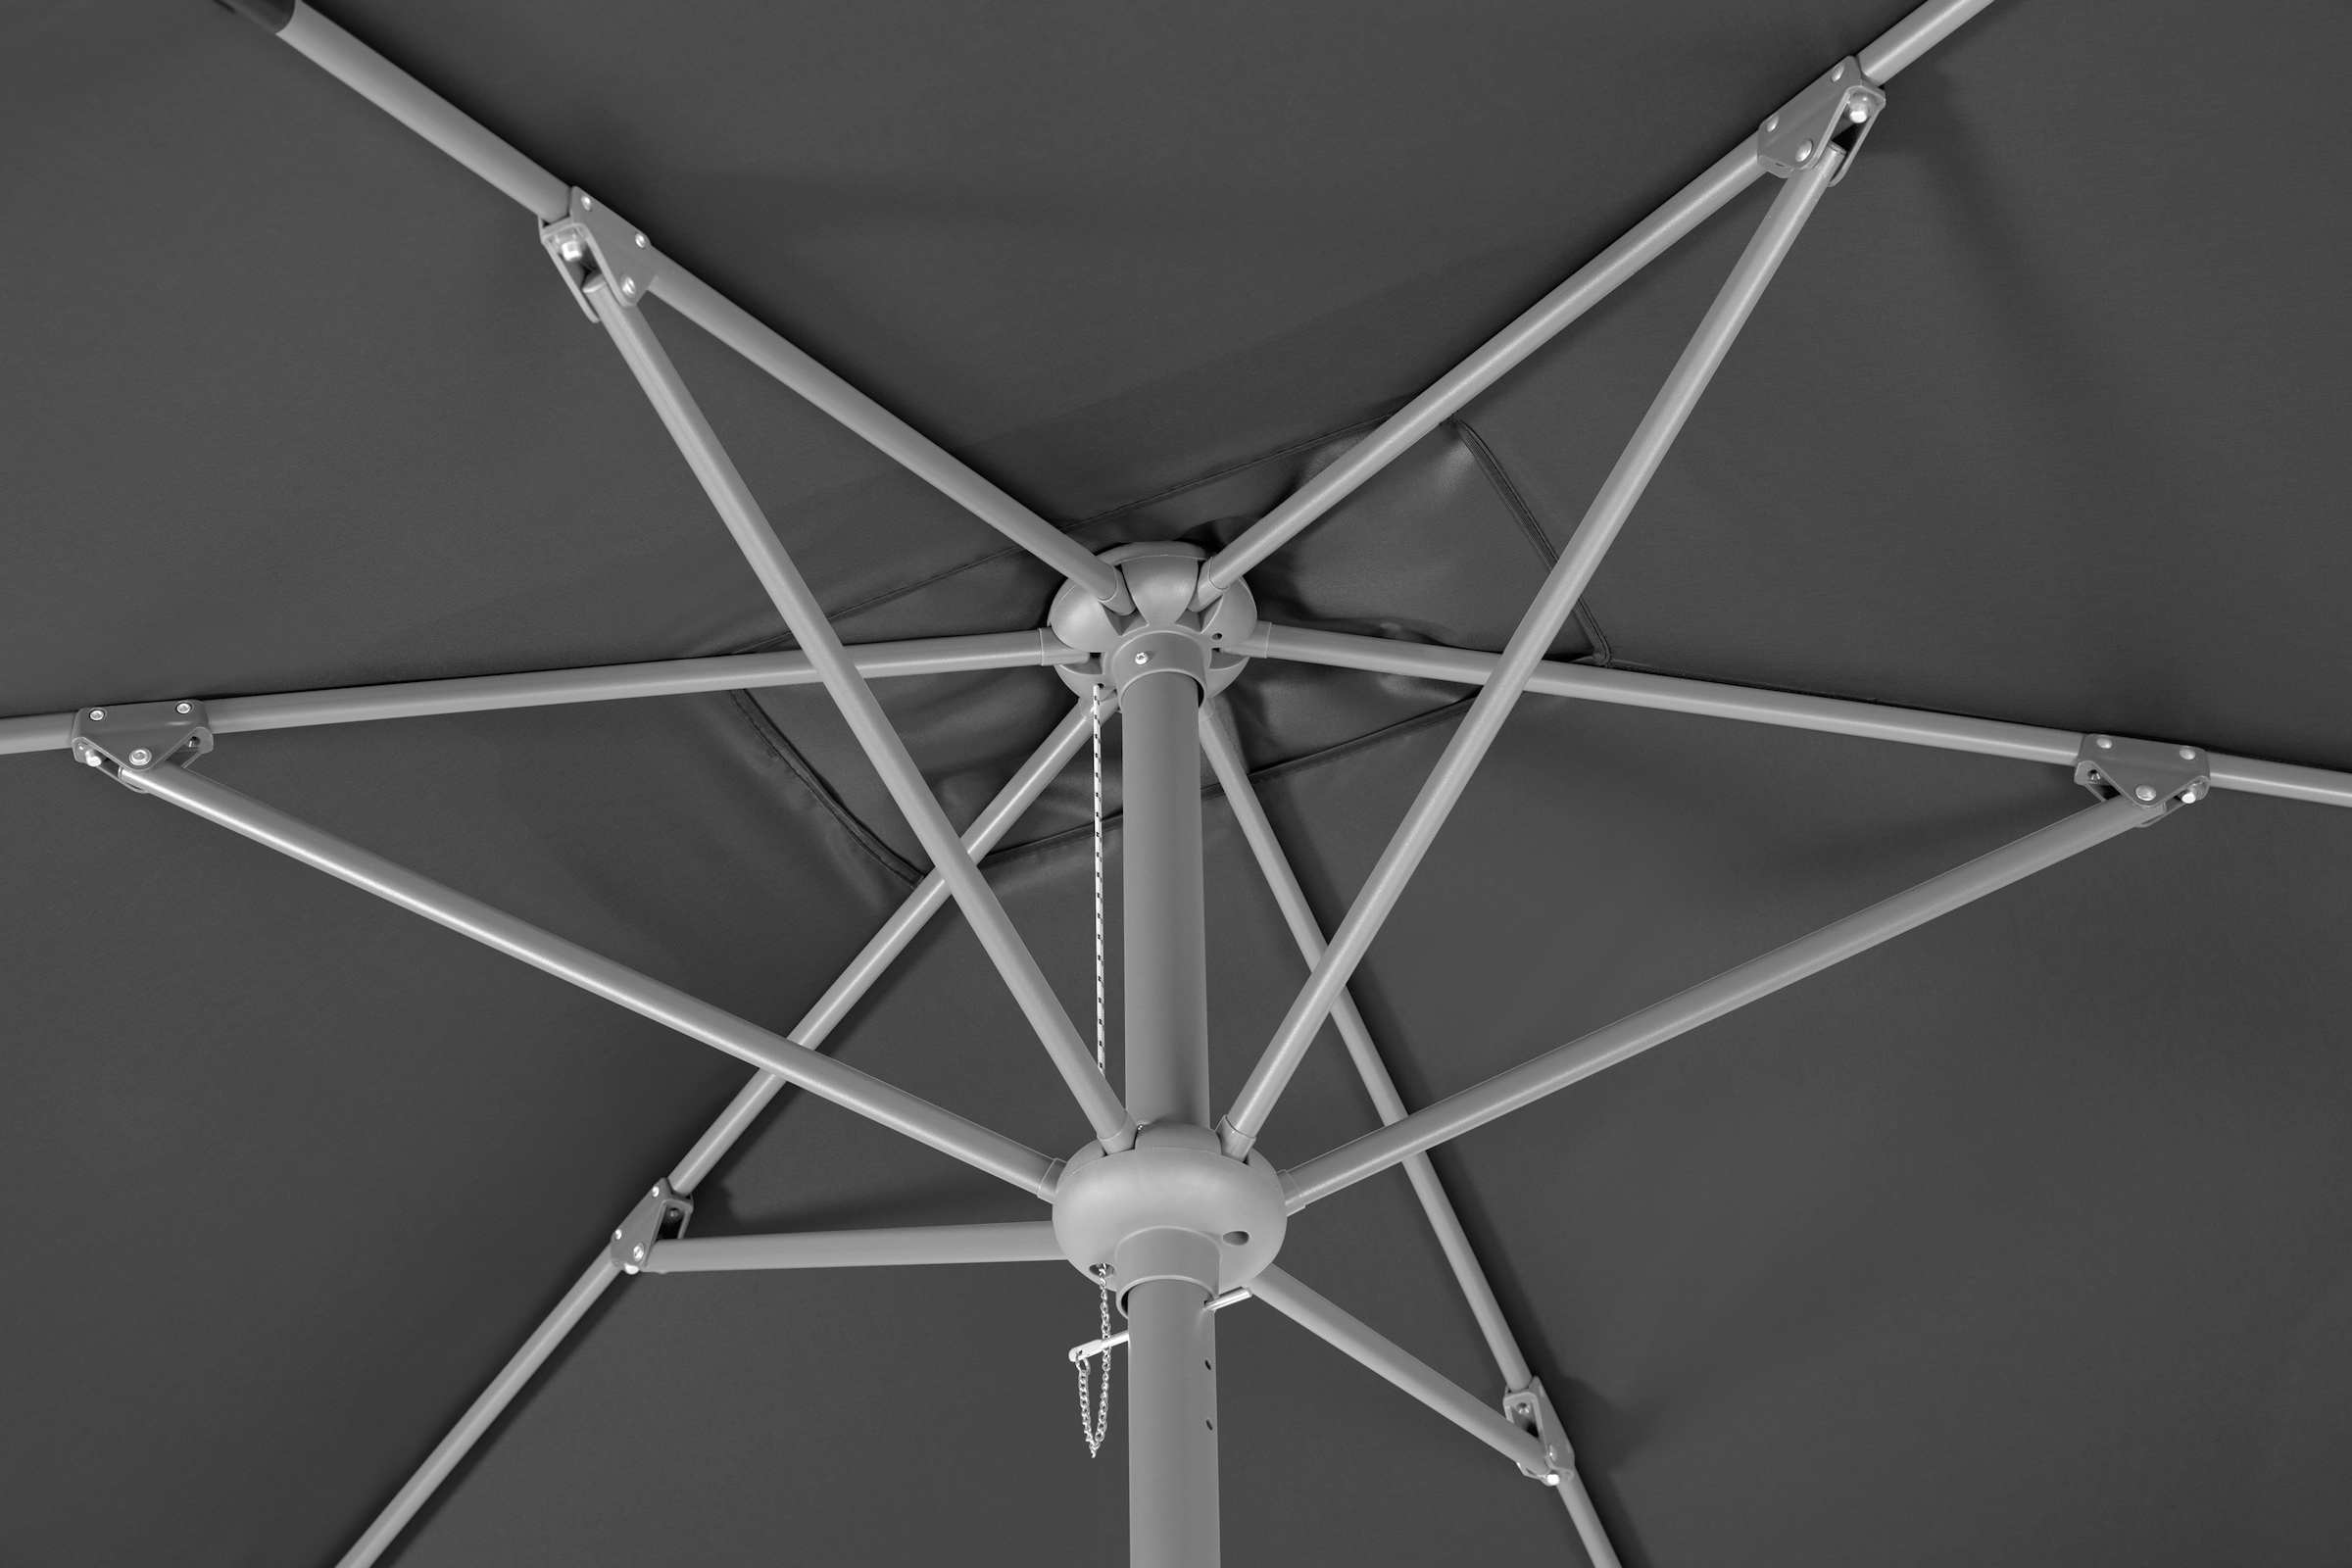 Schneider Schirme Marktschirm »Porto«, Stahl/Polyester